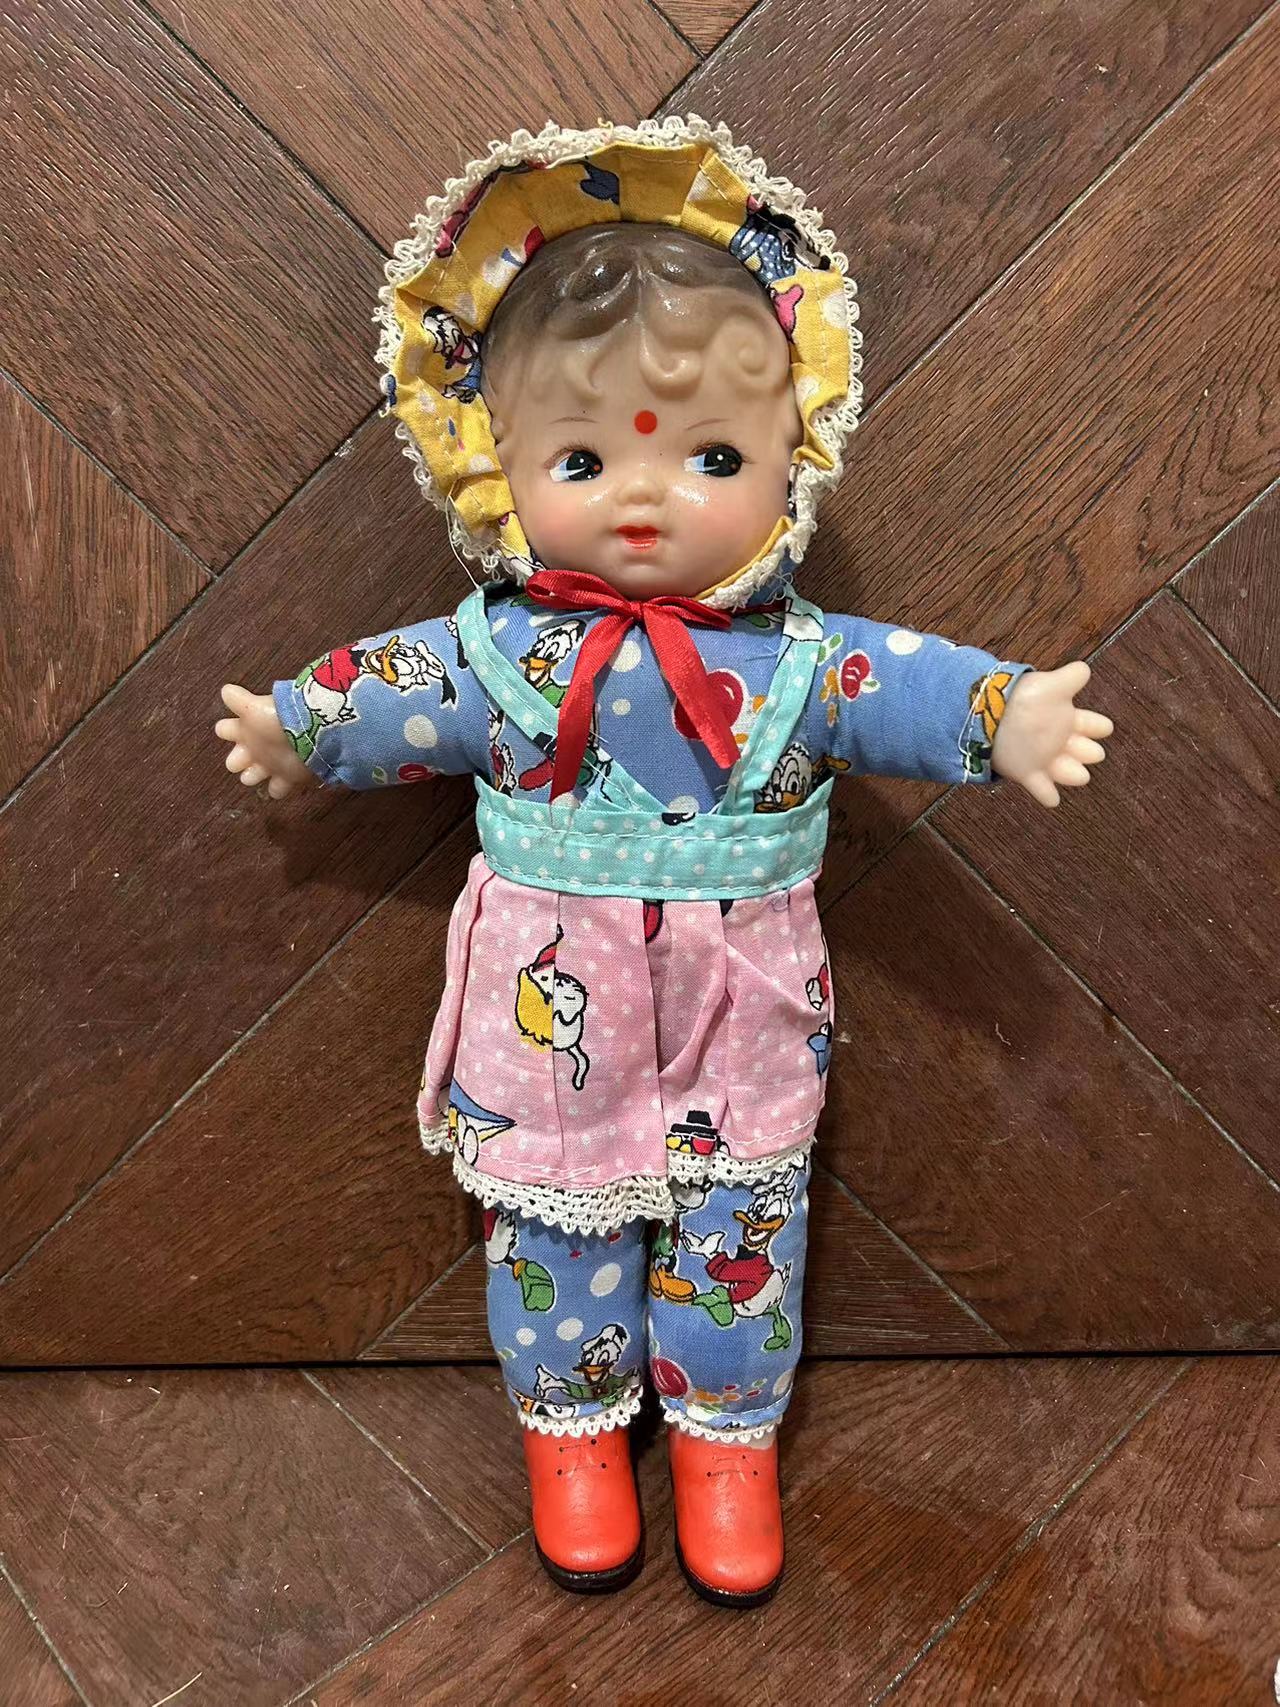 80年代90年代老玩具老娃娃怀旧玩具 少数民族 胶皮娃娃 毛绒娃娃